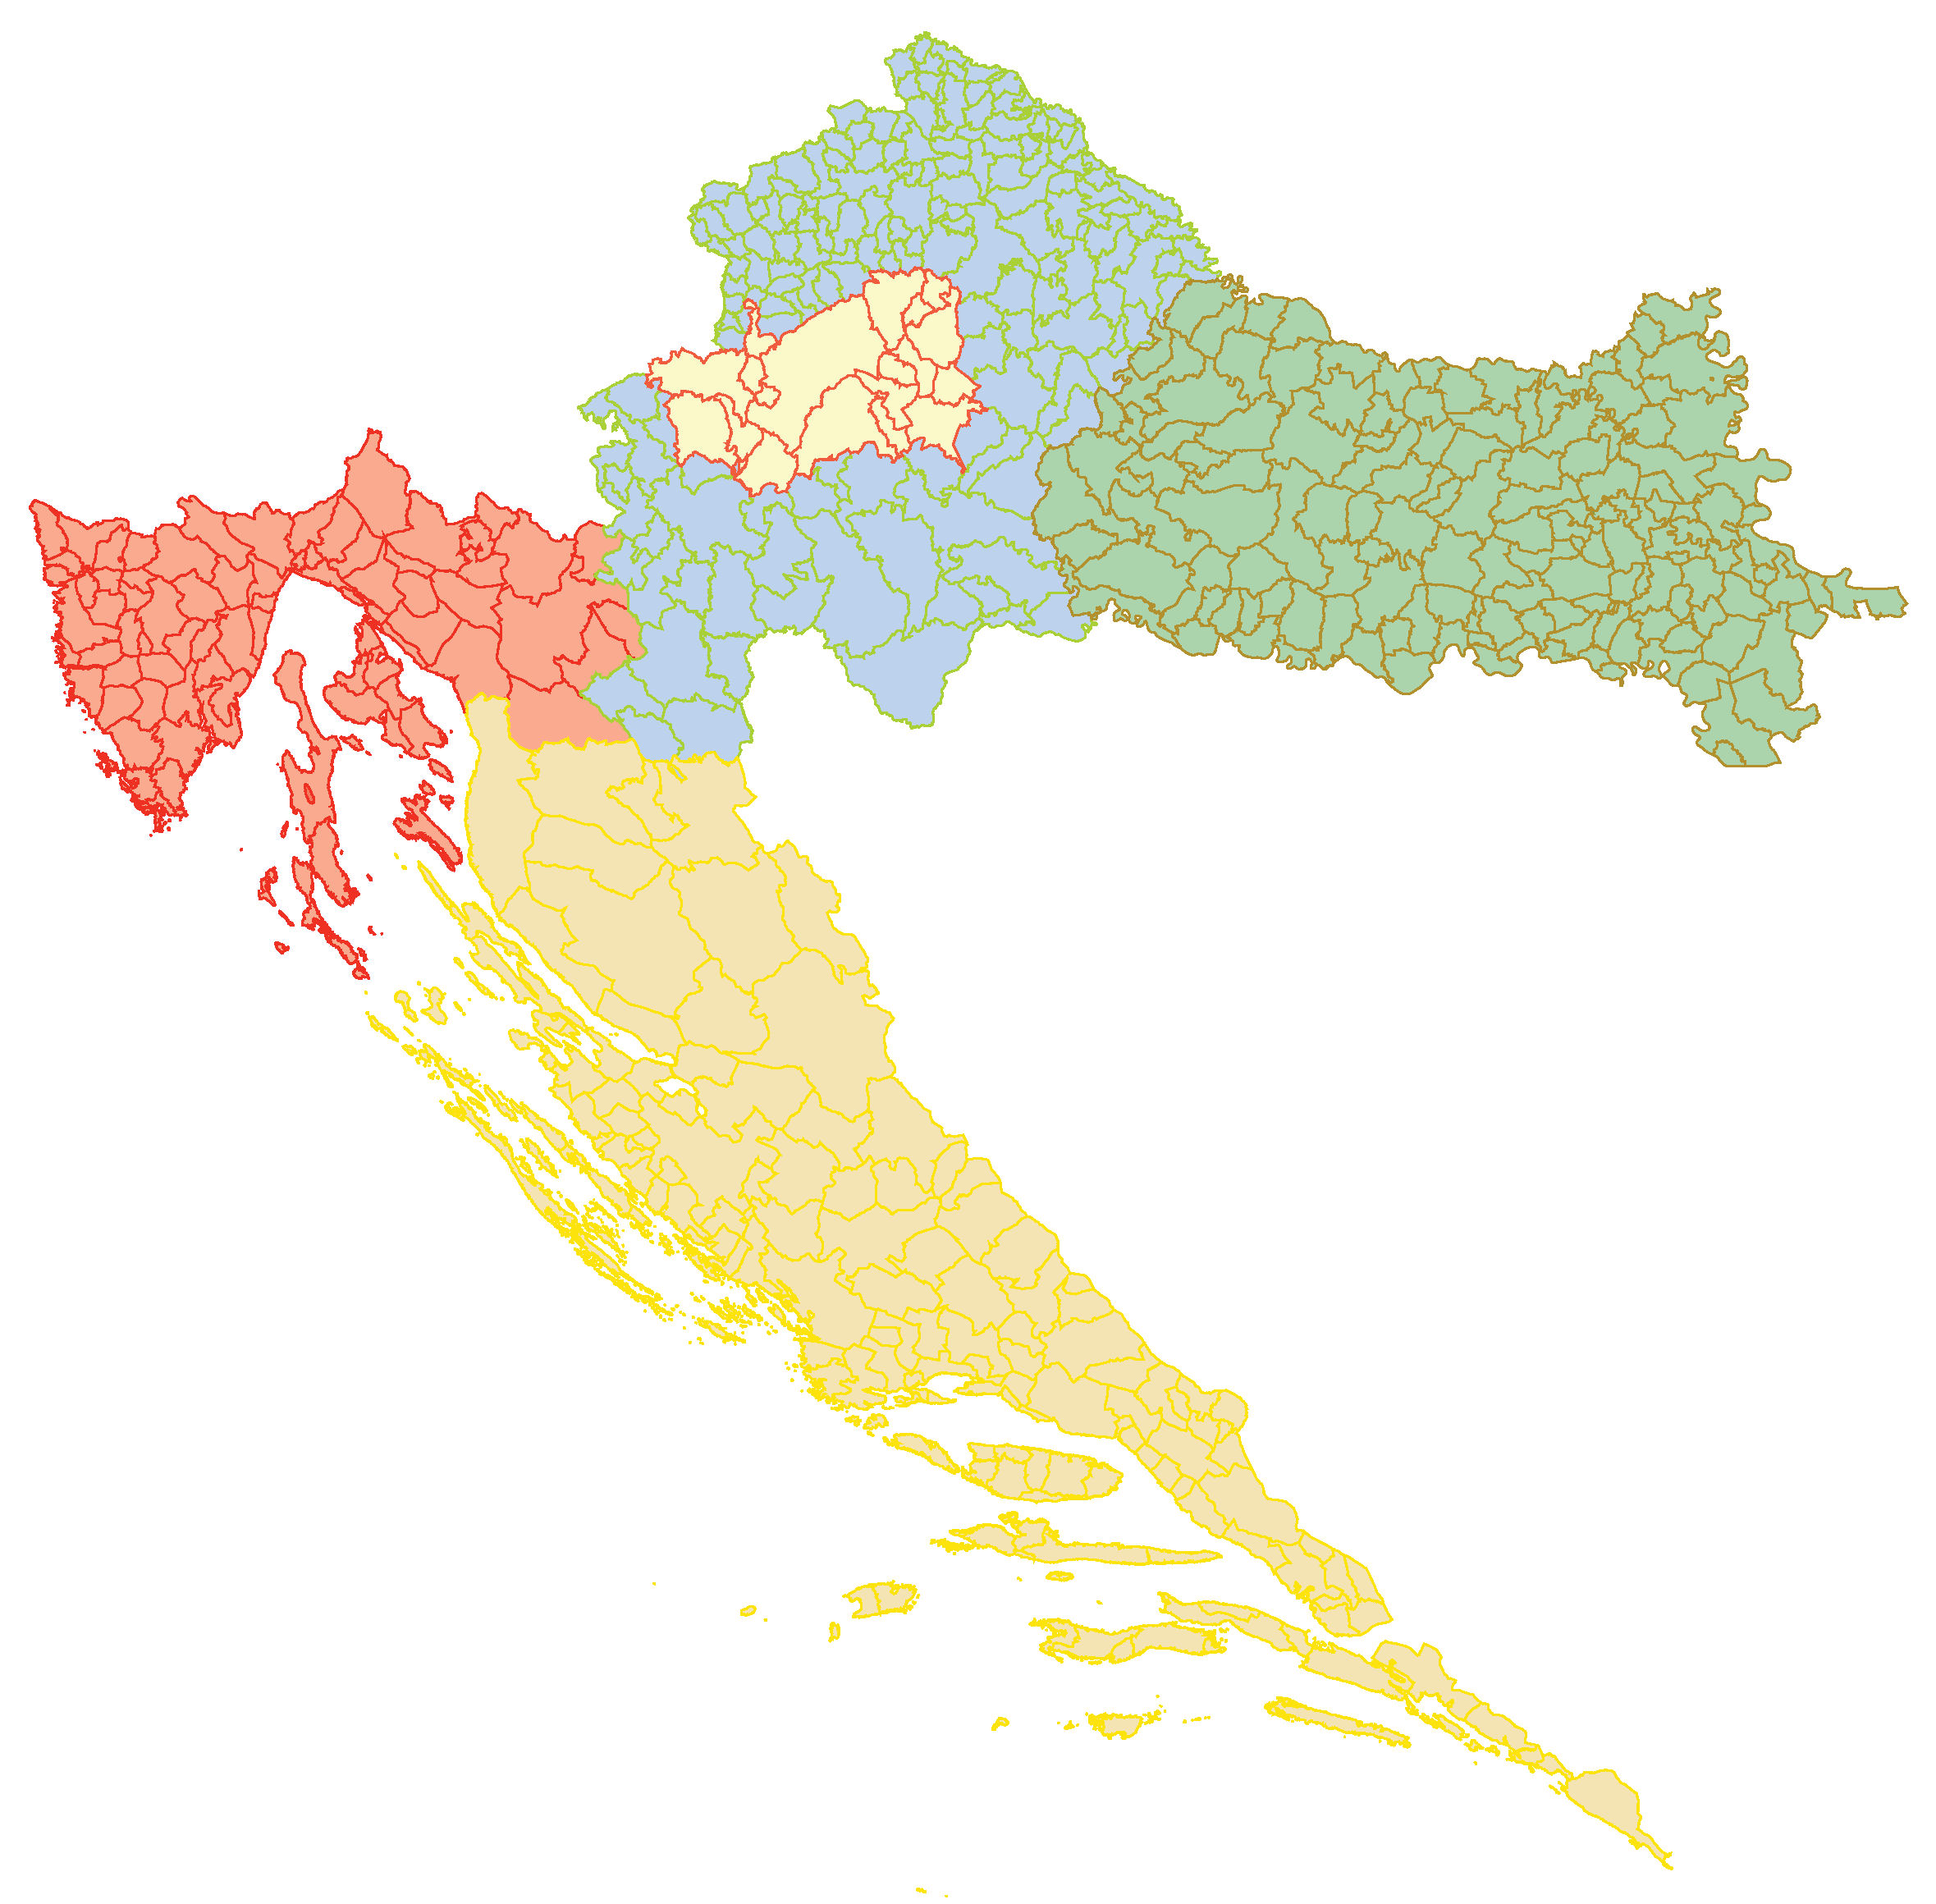 karta hrvatske slavonija Karta RH: Prijedlog teritorijalne podjele Hrvatske | Centar za  karta hrvatske slavonija